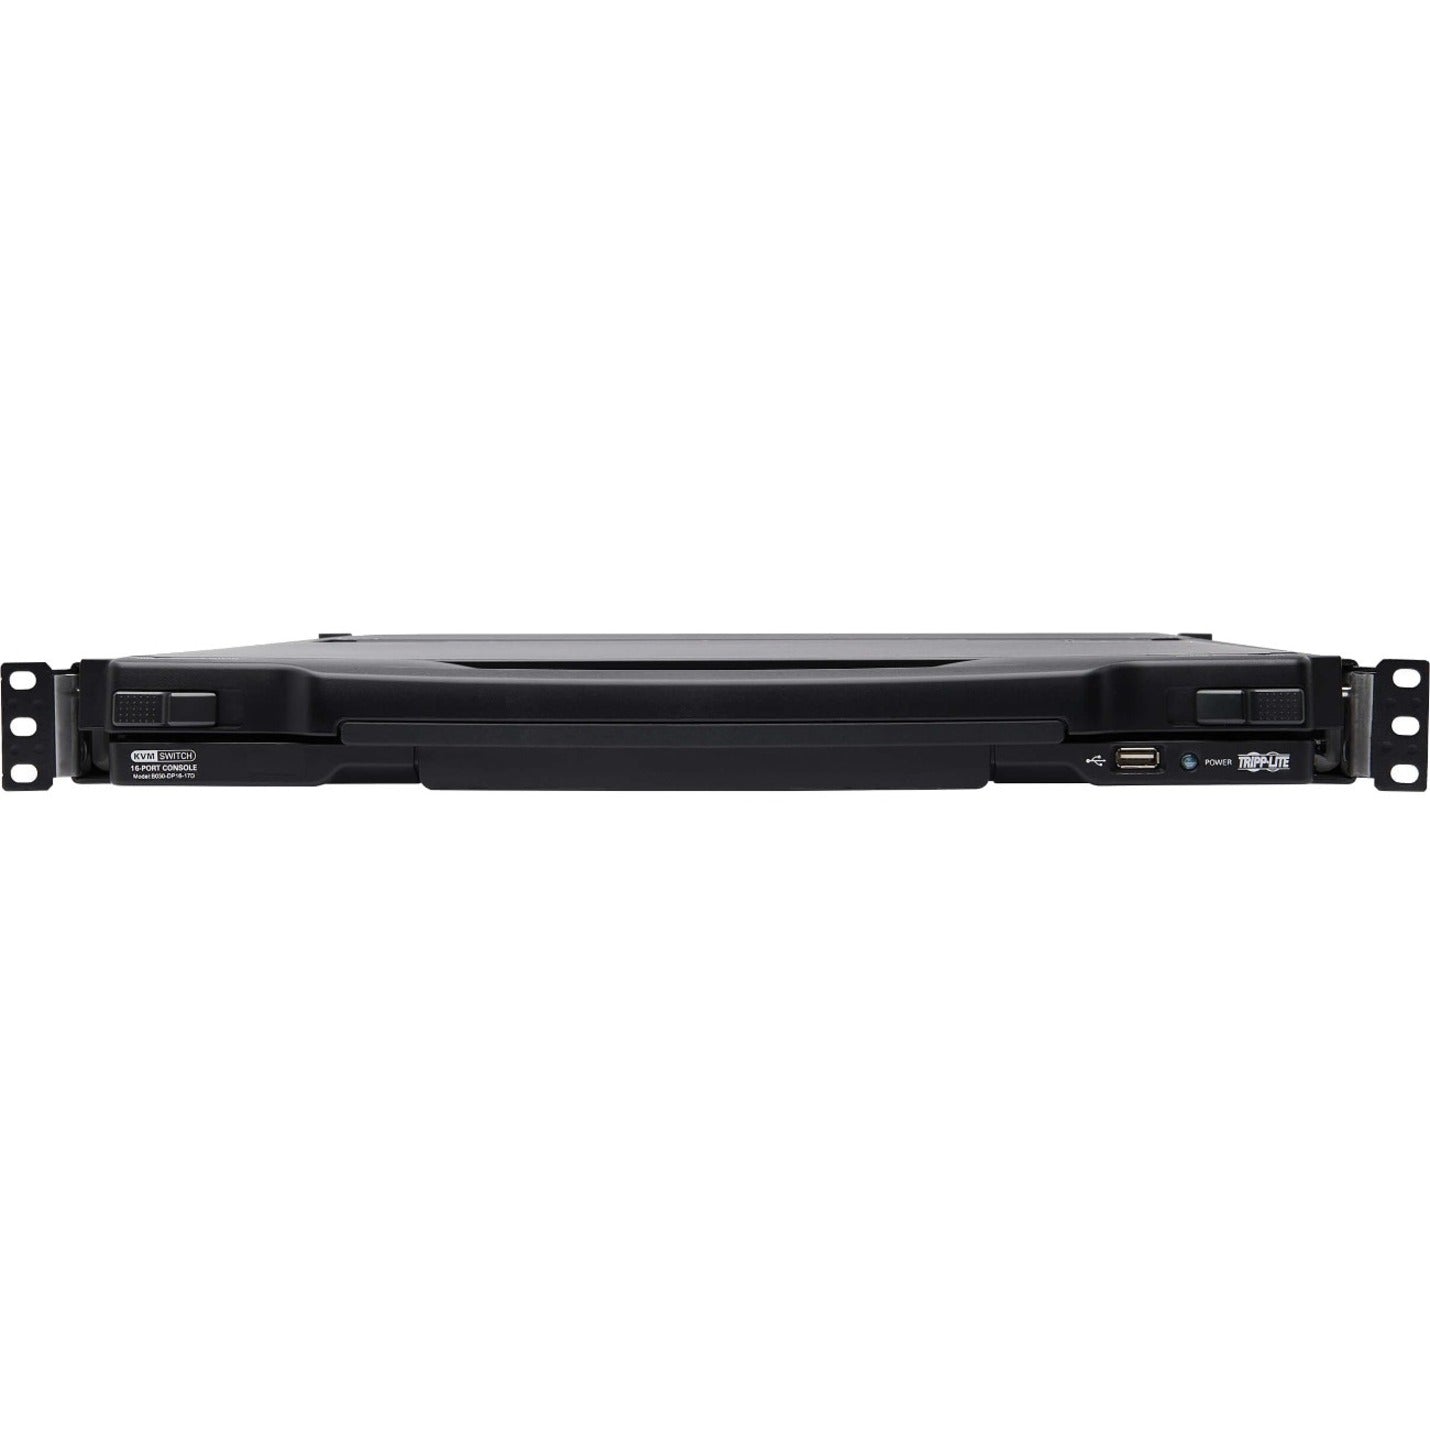 Tripp Lite B030-DP16-17D 16-Port DisplayPort KVM Switch Console, 17" LCD, Full HD, USB, Mac/PC/Linux